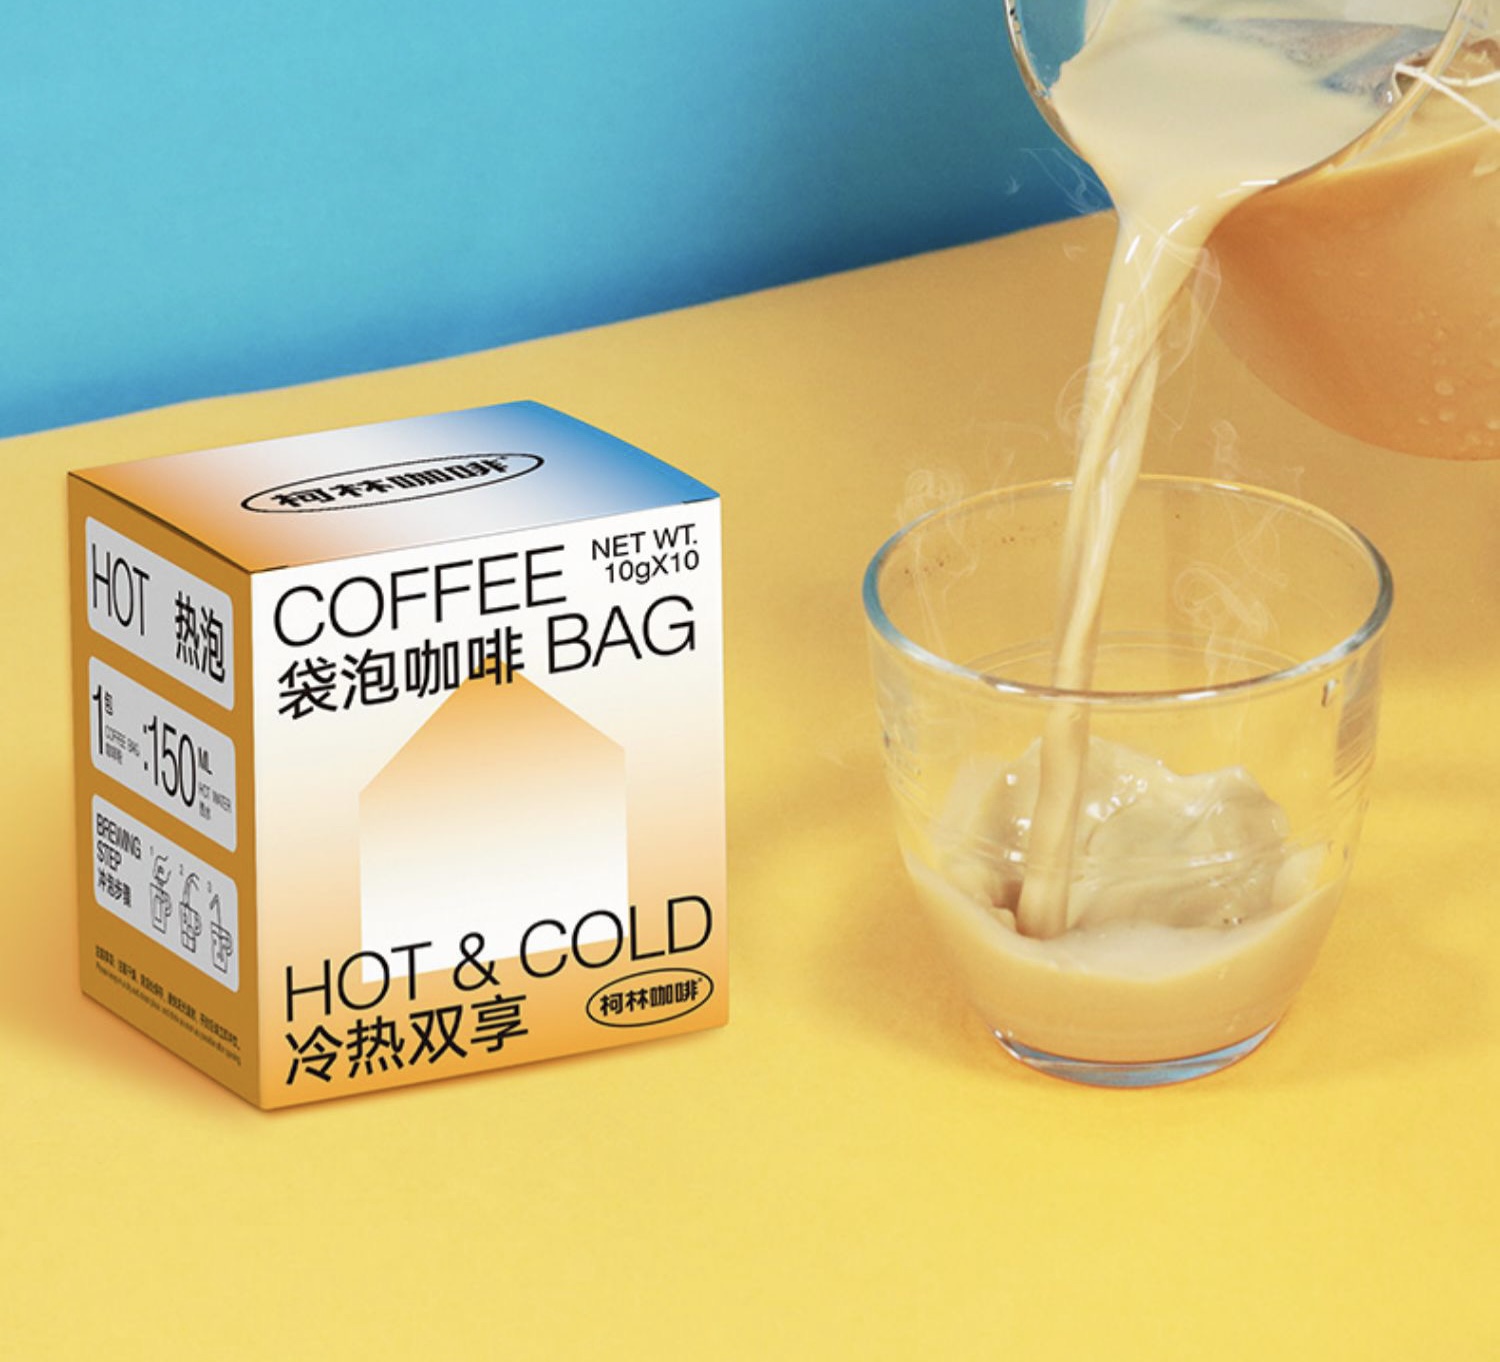 袋泡咖啡包装设计